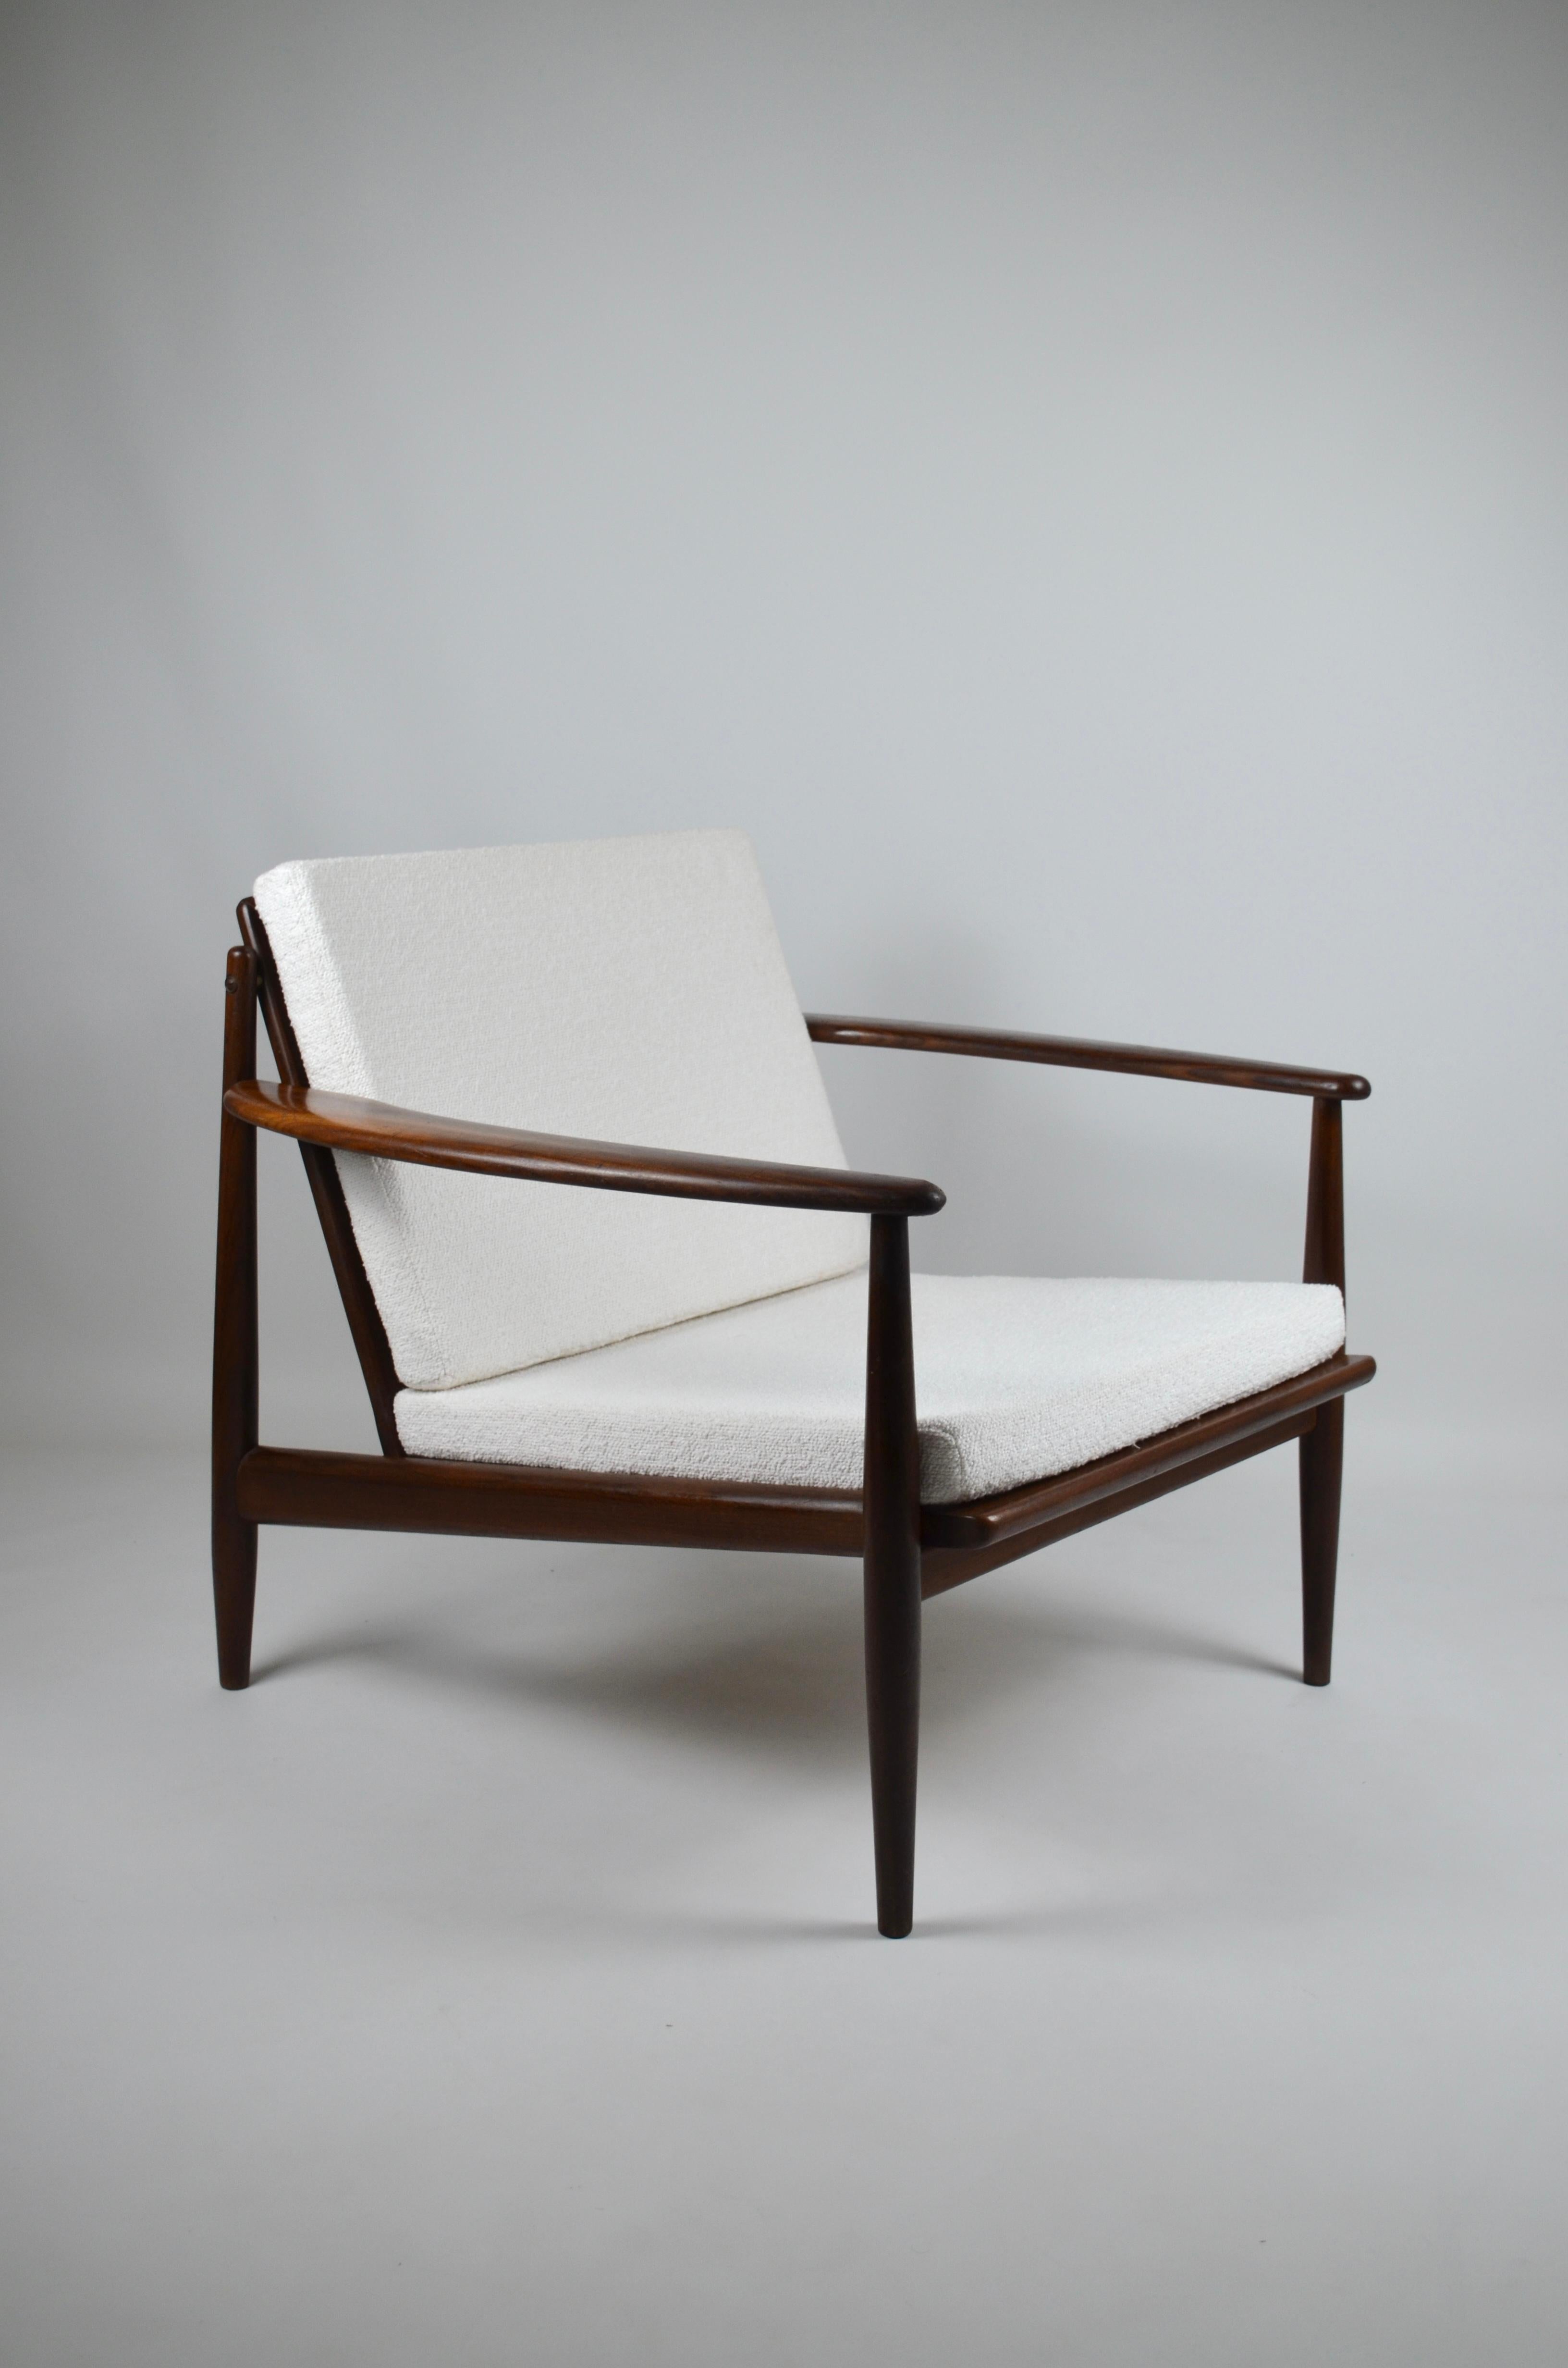 Armchair by designer Grete Jalk in solid teak, 1960s
Refurbished cushions
Very elegant !